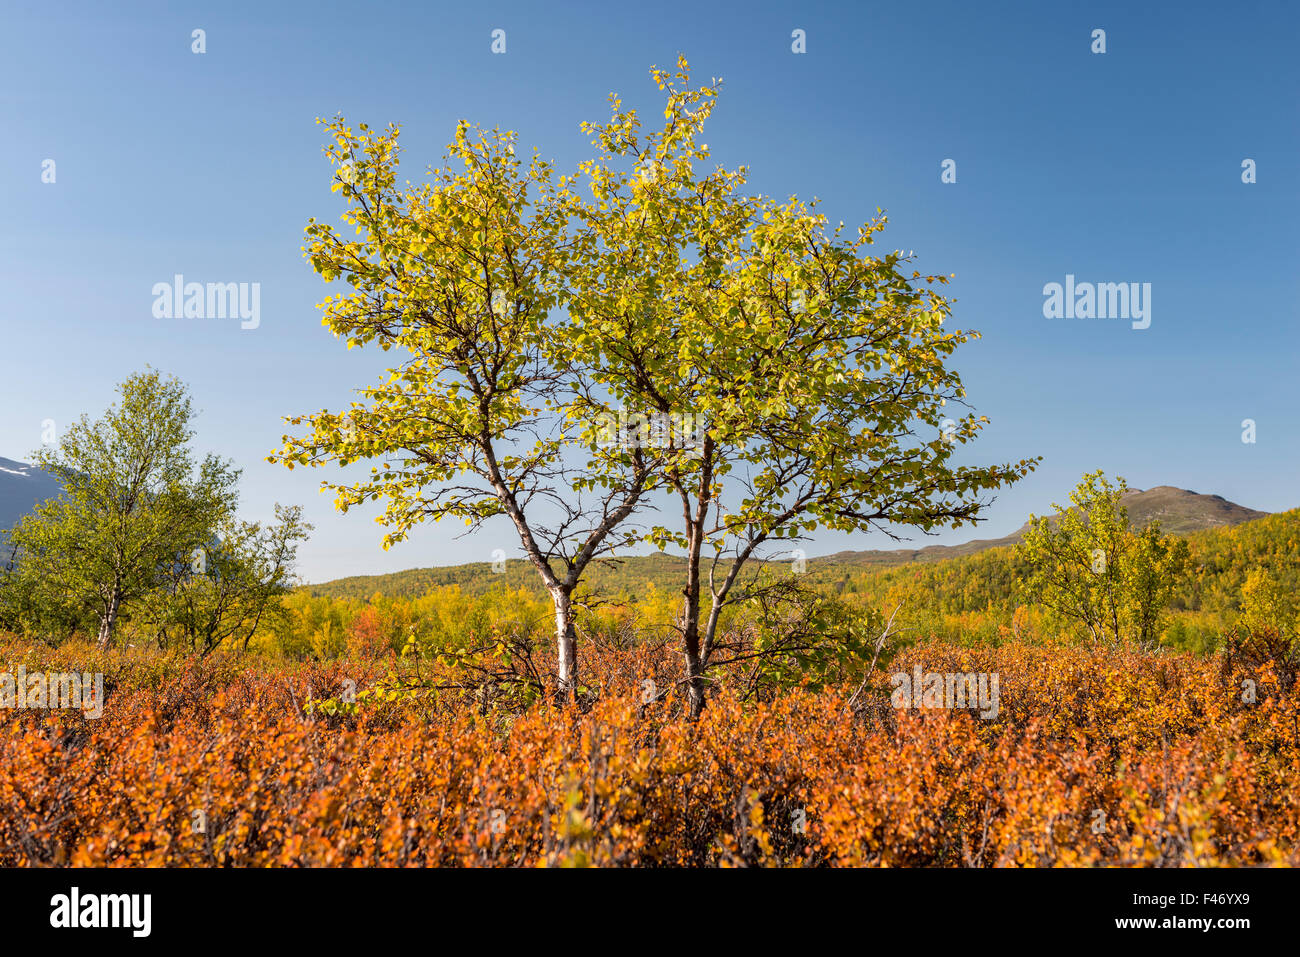 Autumnal bouleau glanduleux (Betula nana), Abisko National Park, Norrbotten, Lapland, Sweden Banque D'Images